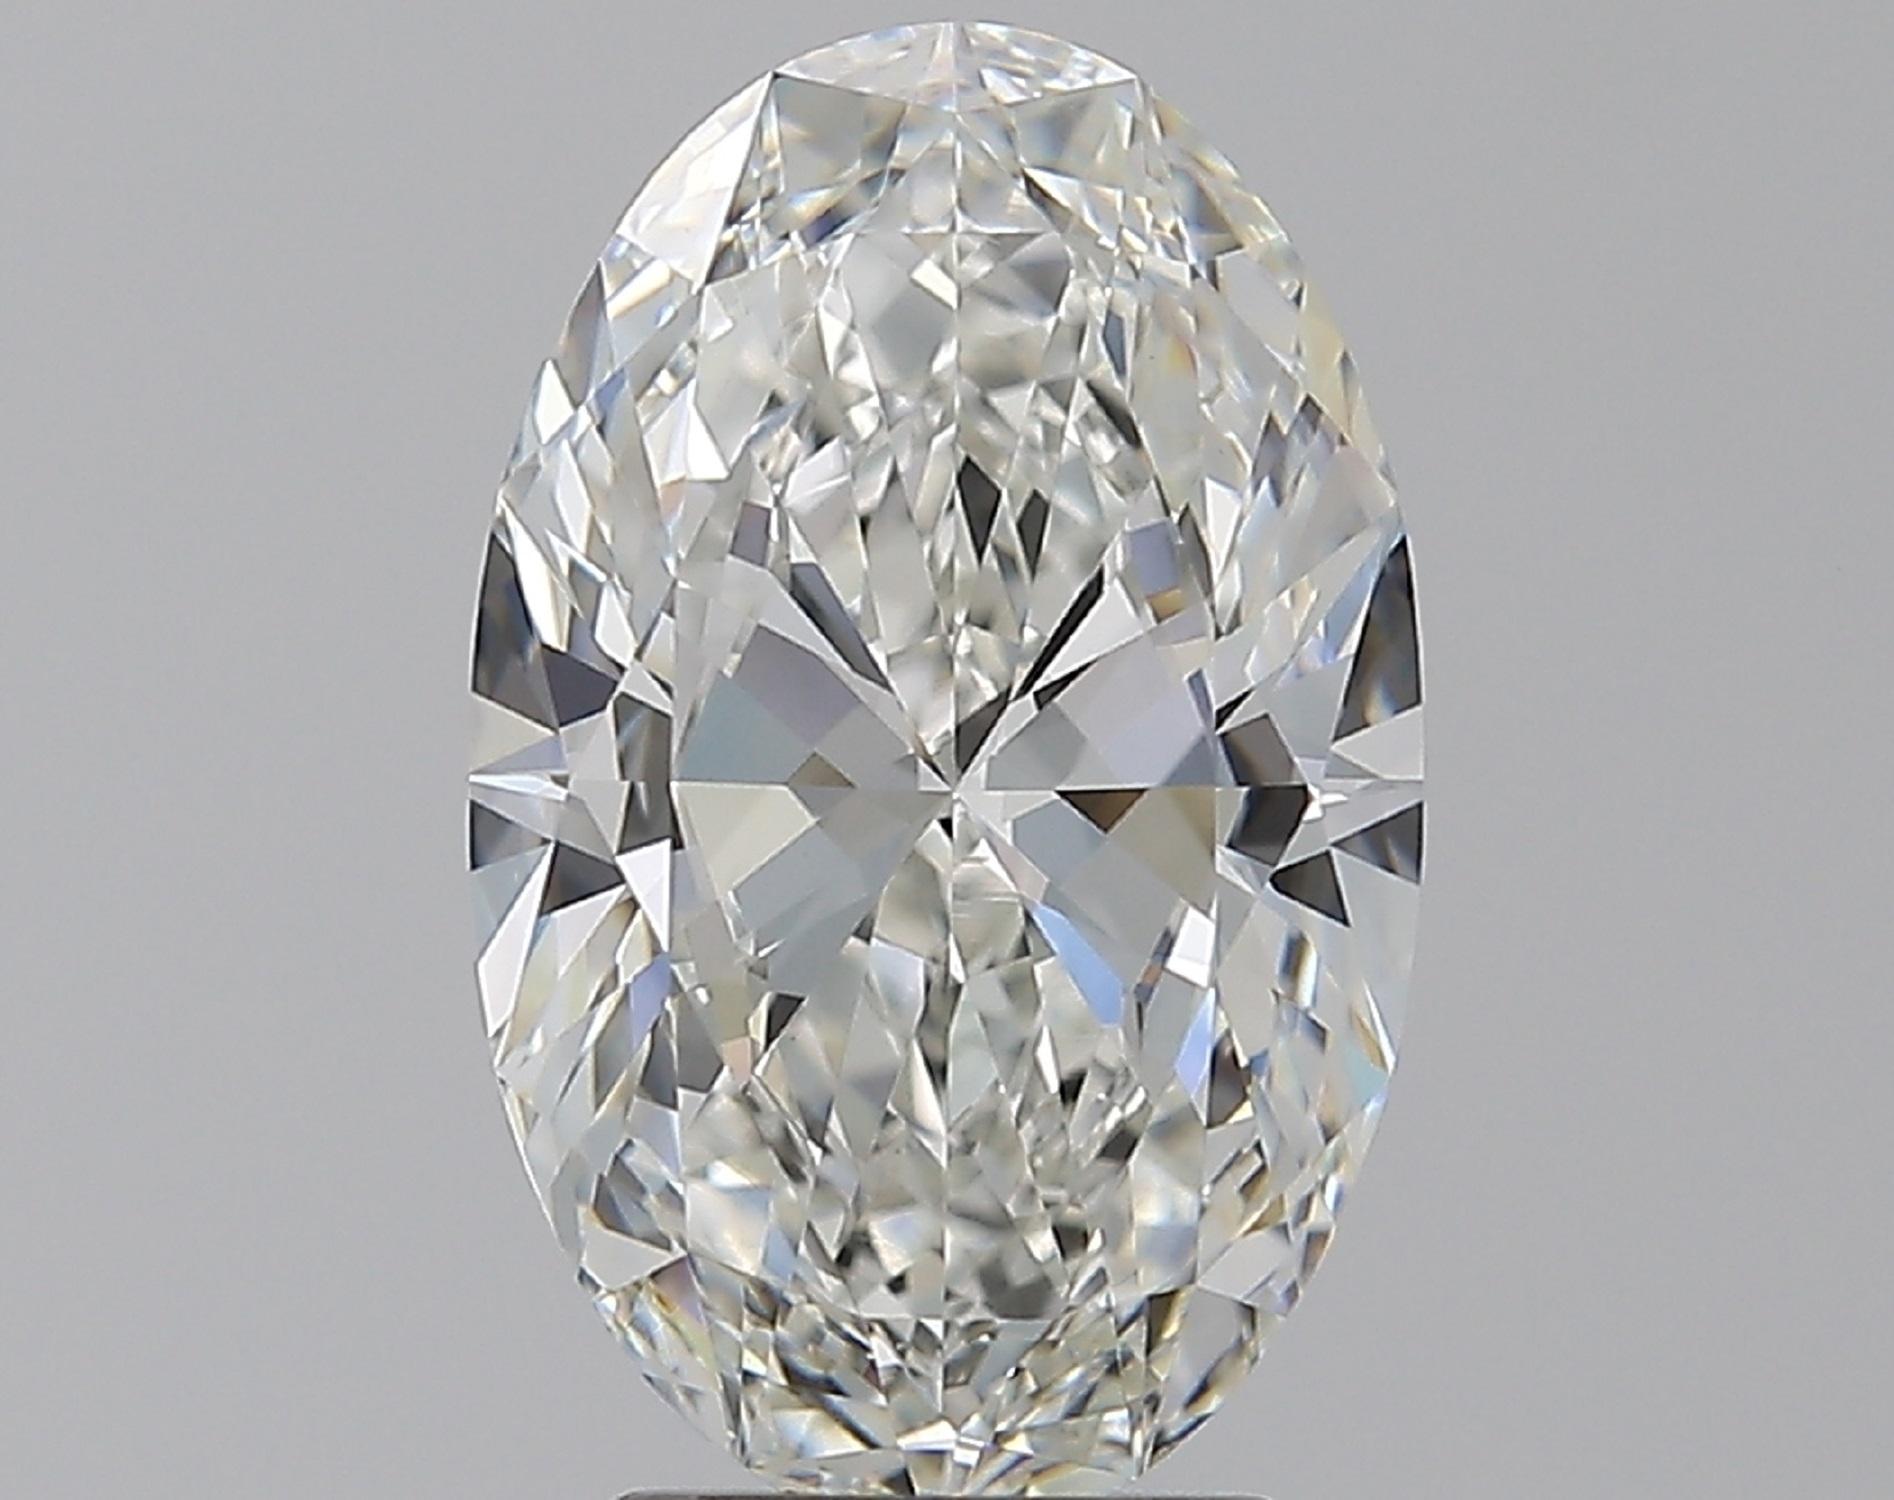 2.5 carat oval diamond ring